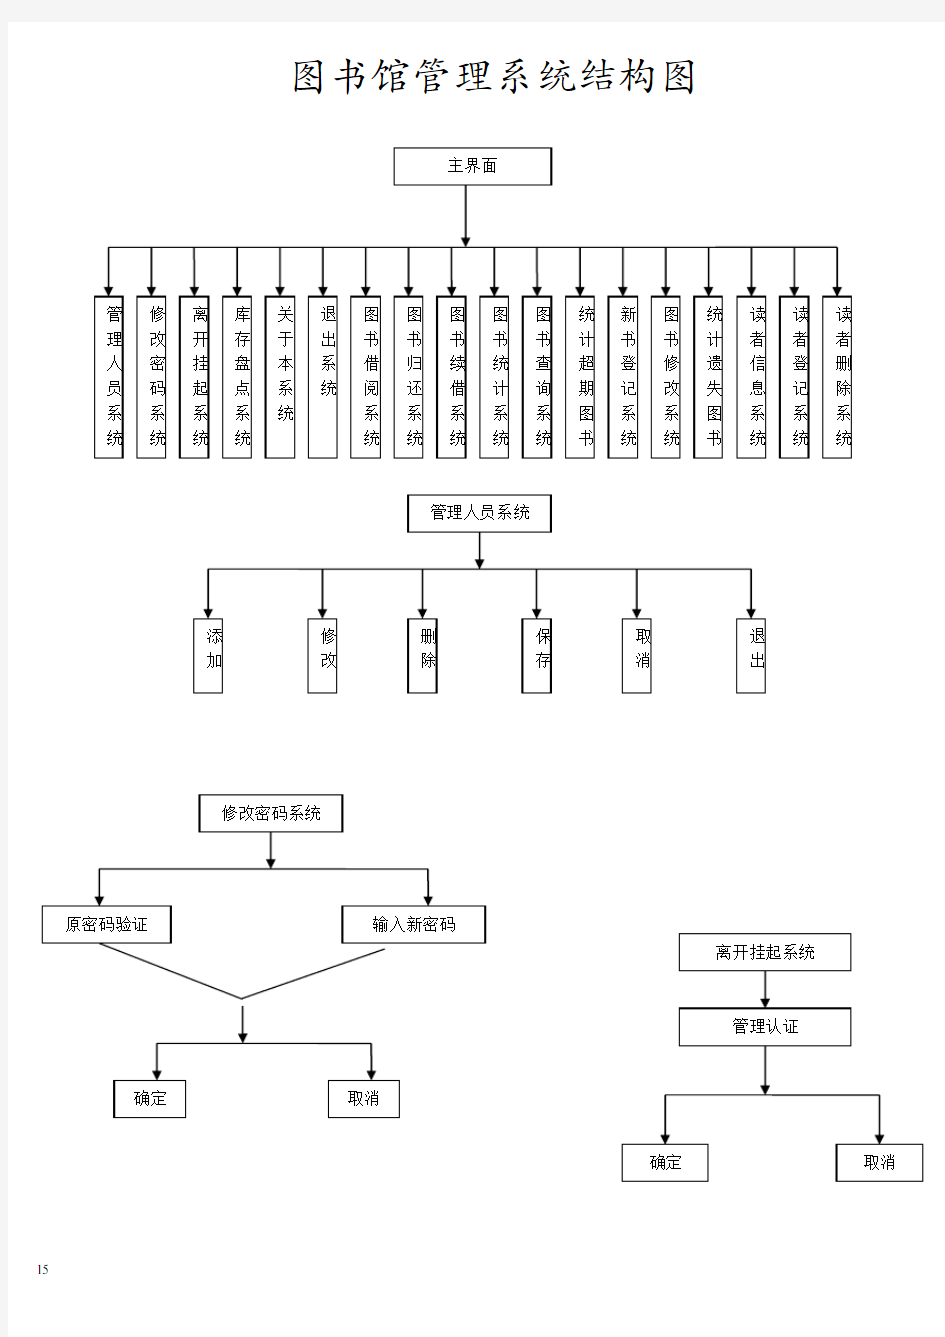 图书馆管理系统结构图